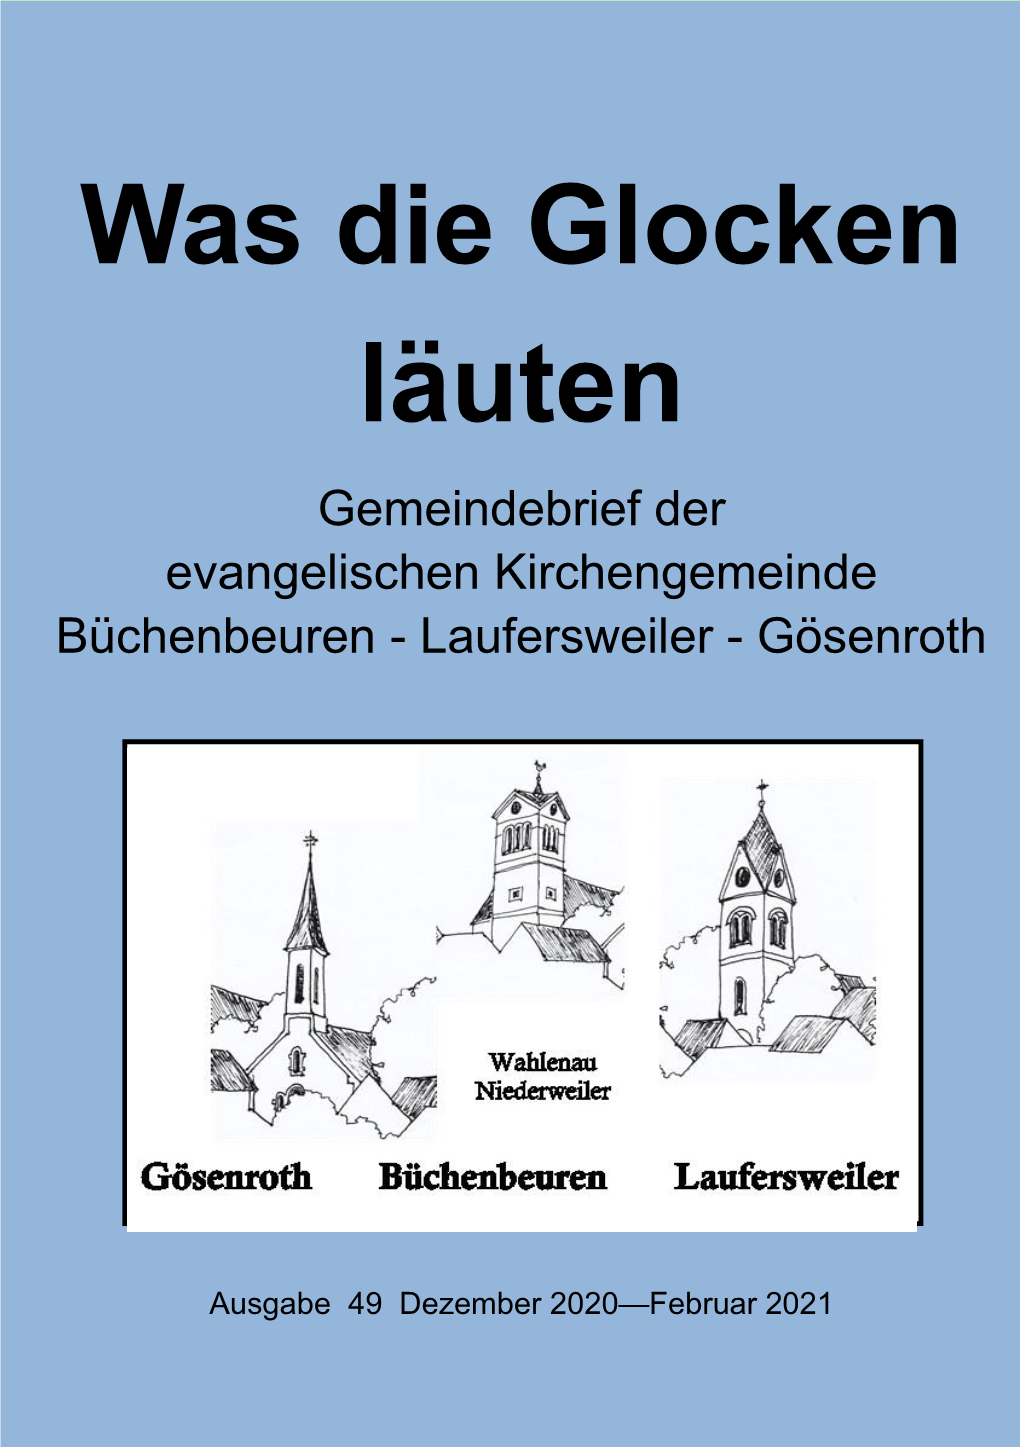 Was Die Glocken Läuten Gemeindebrief Der Evangelischen Kirchengemeinde Büchenbeuren - Laufersweiler - Gösenroth